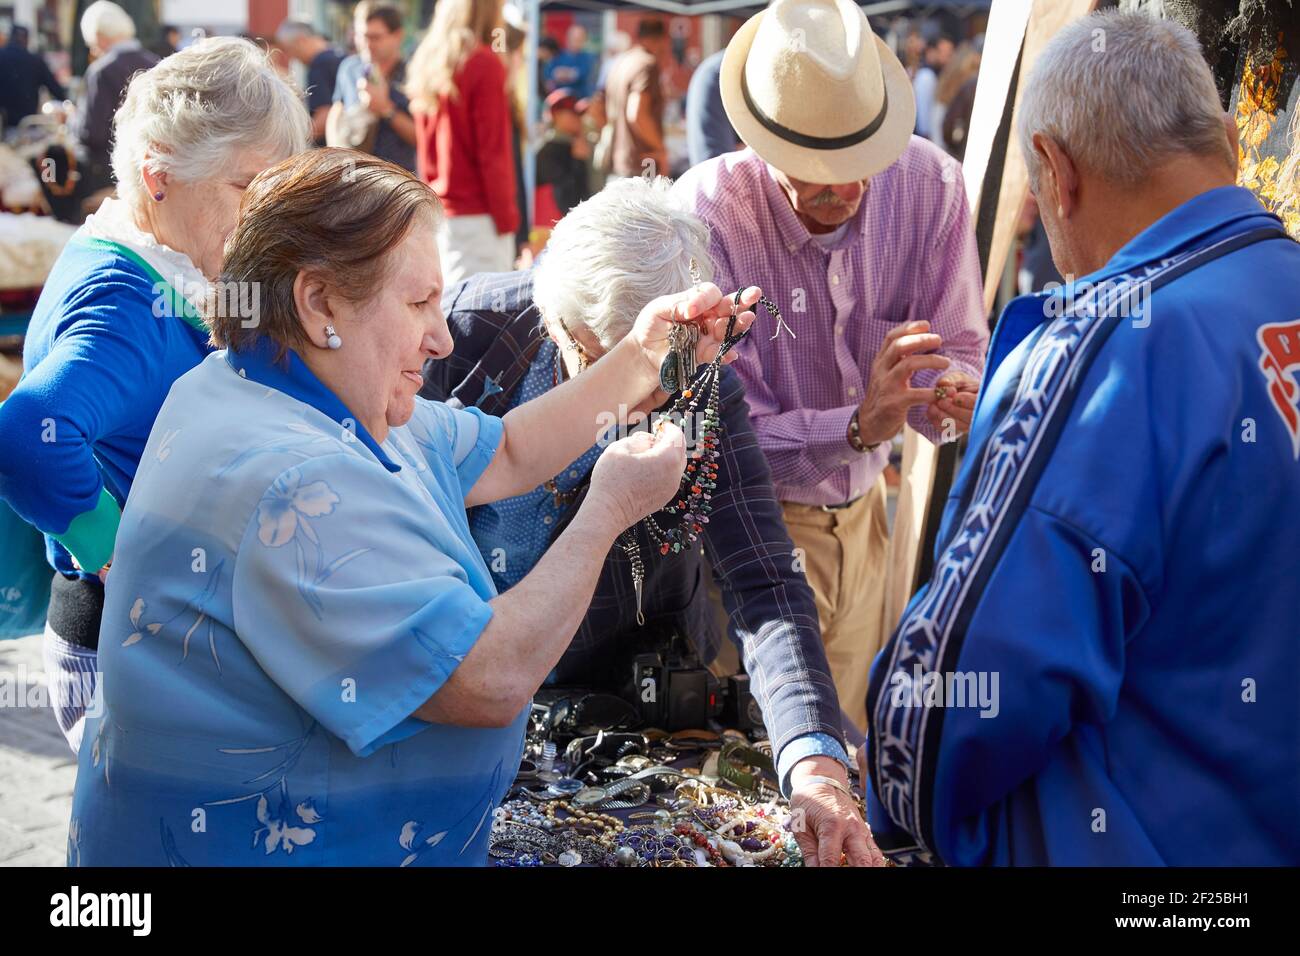 Gente mirando joyería, el mercado callejero más antiguo de Sevilla, Mercadillo de los Jueves, mercado de jueves, , Sevilla, Andalucía, España Foto de stock